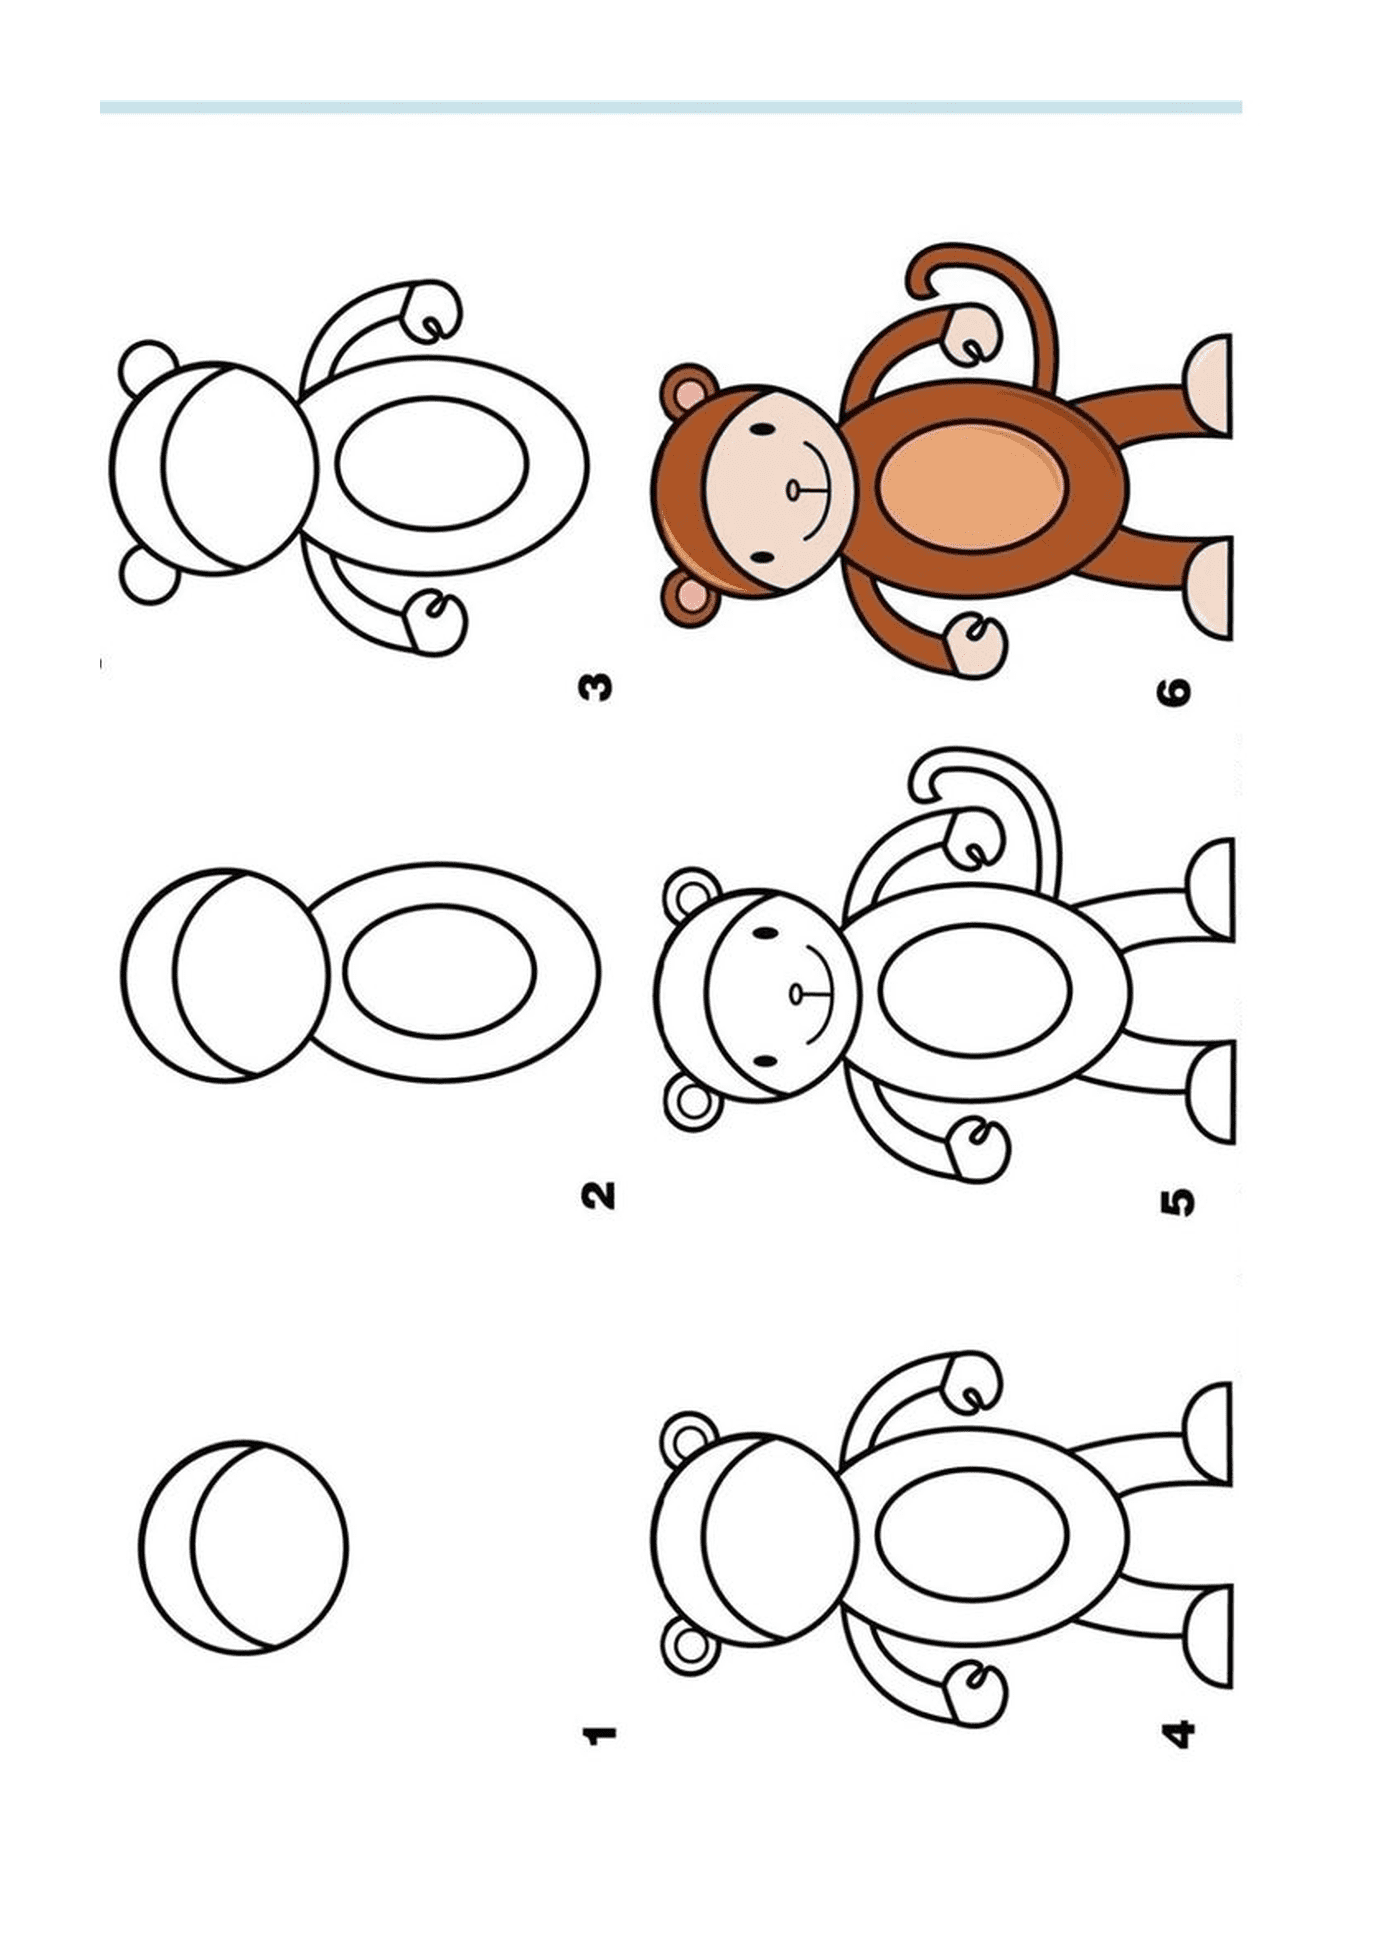   Comment dessiner un singe facilement 